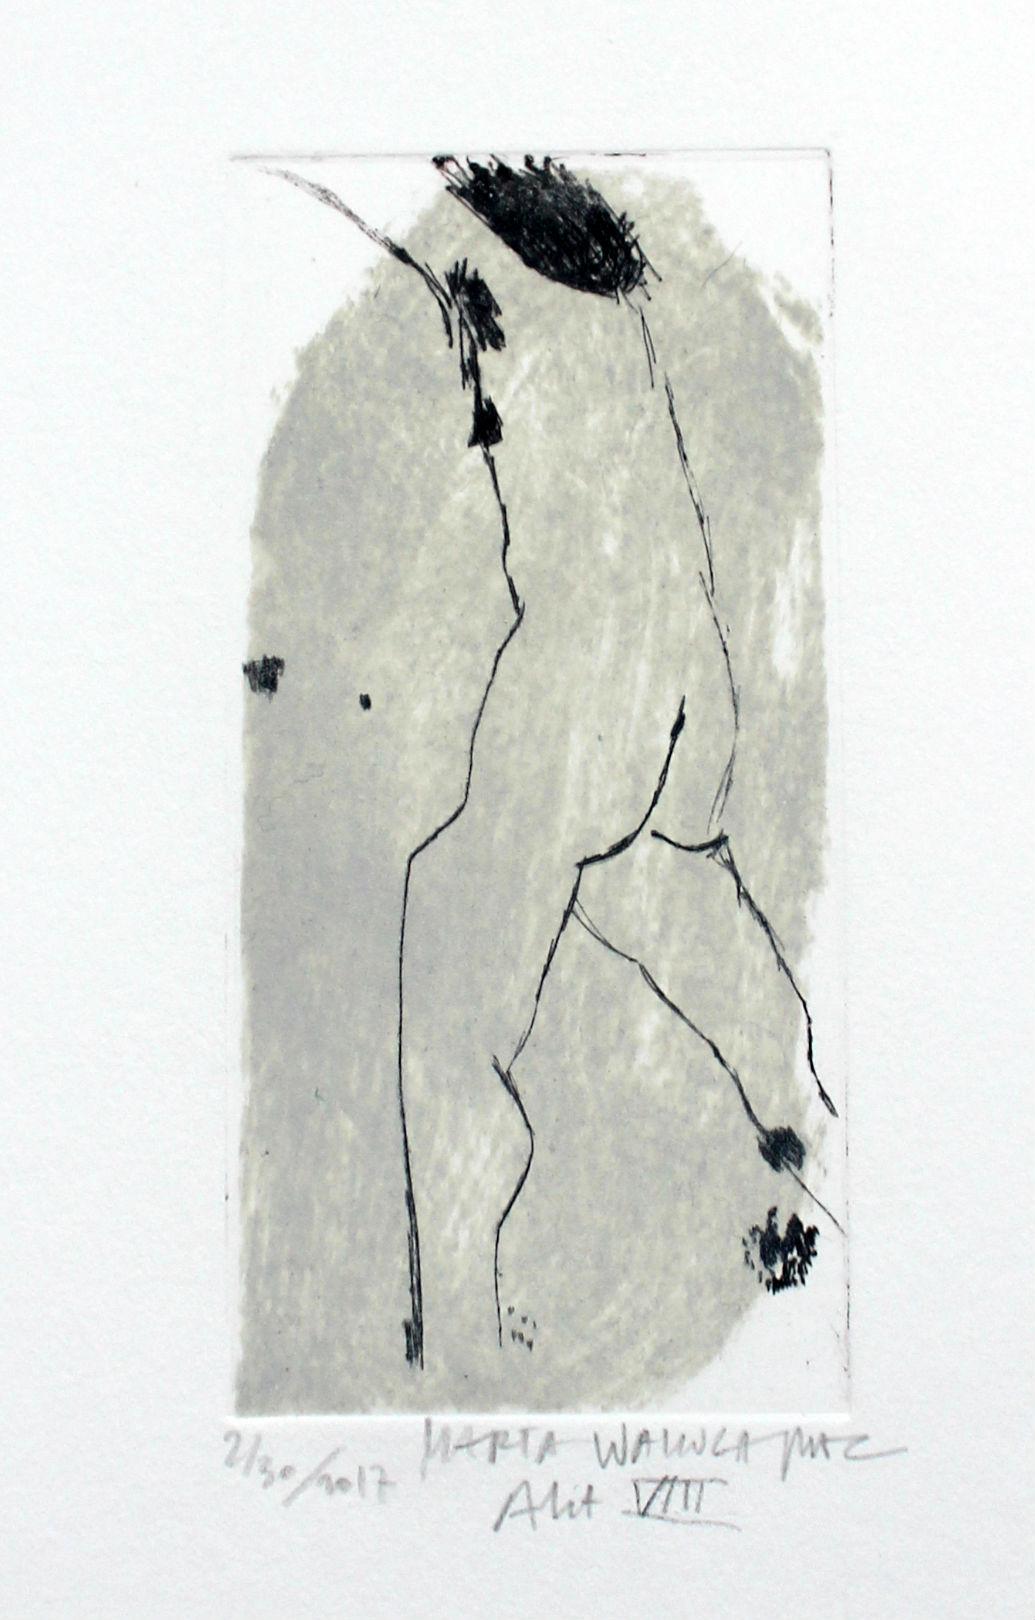 Marta Wakula-Mac Nude Print – Nude VIII - XXI Jahrhundert, Zeitgenössischer figurativer Drypoint-Radierungsdruck